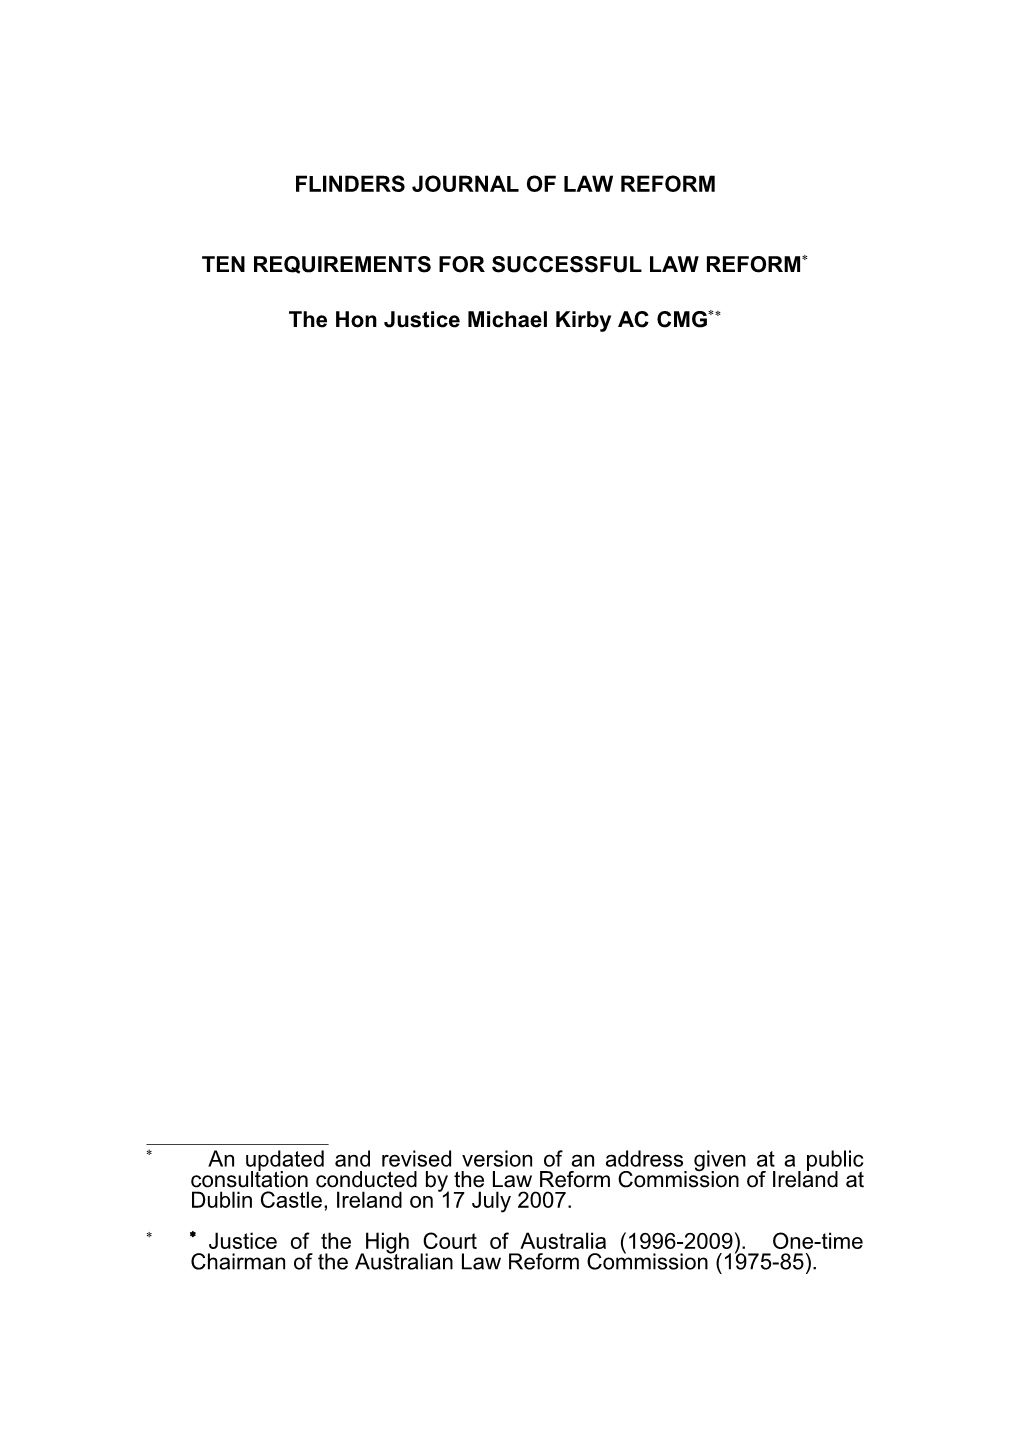 Flinders Journal of Law Reform